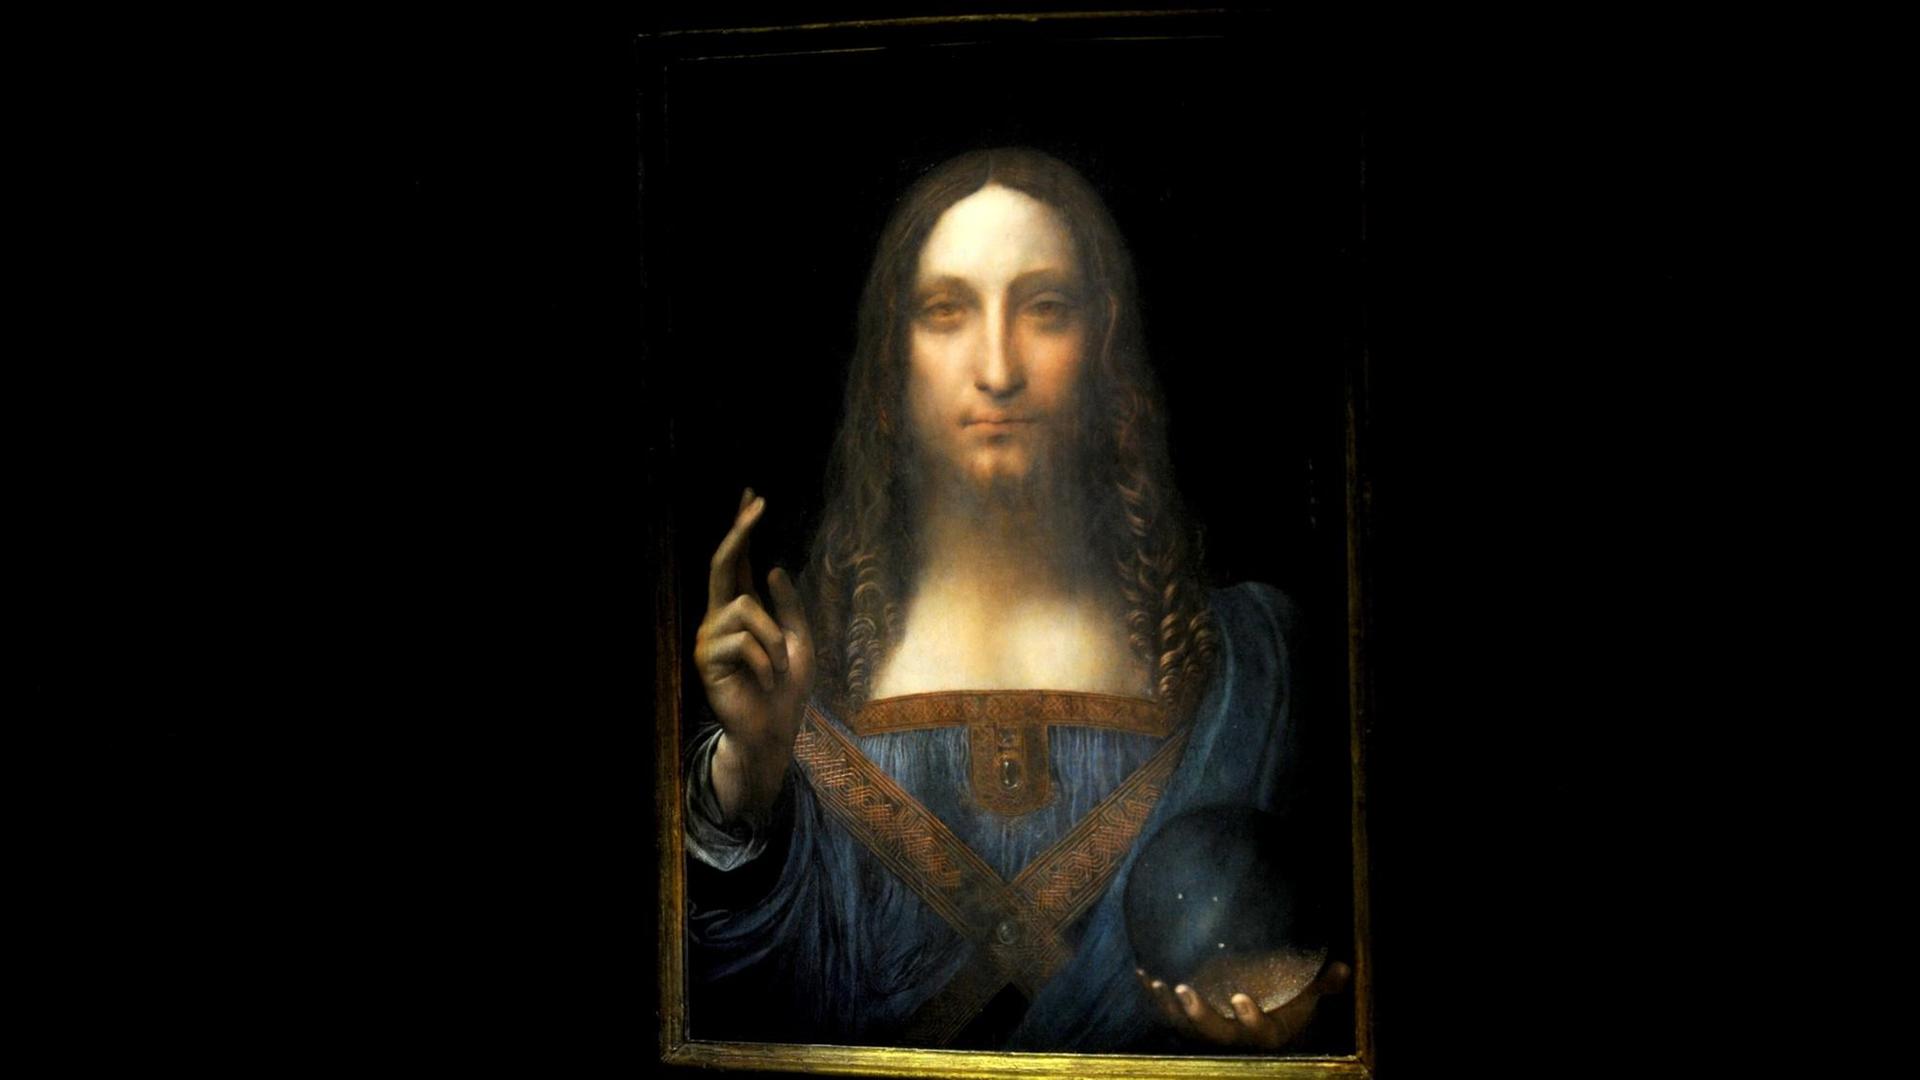 Leonardo da Vincis "Salvator Mundi".